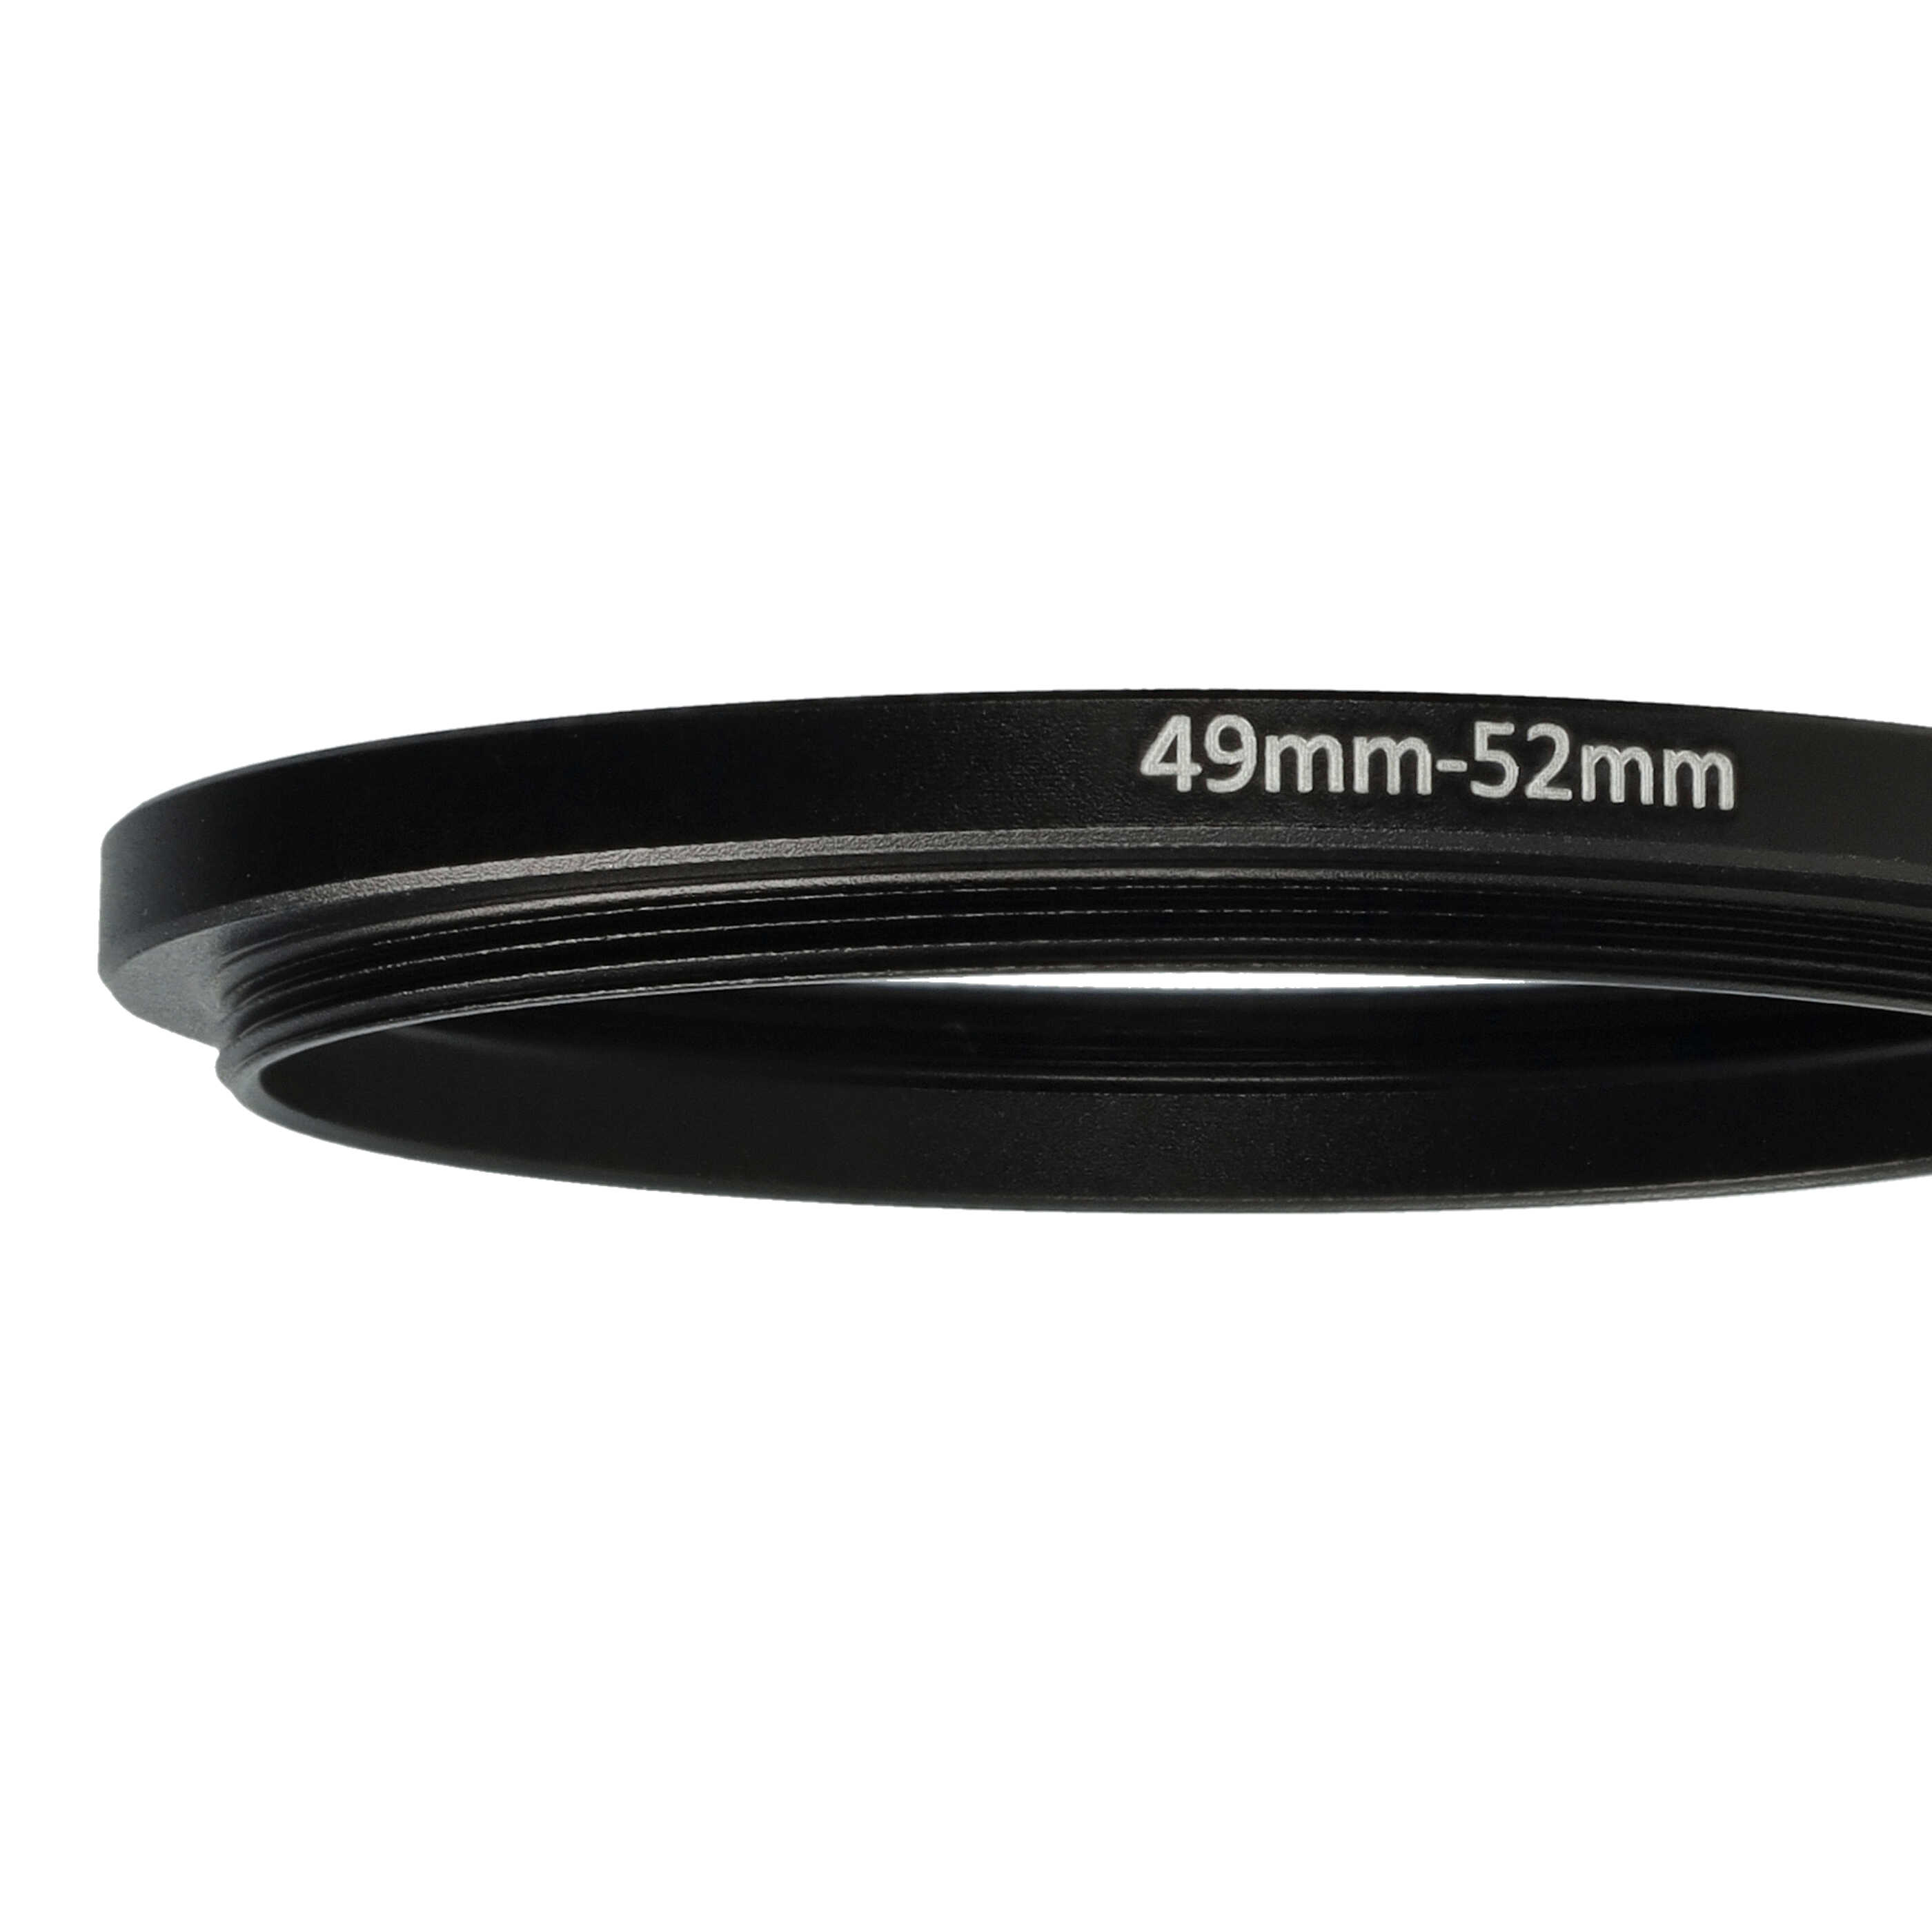 Redukcja filtrowa adapter 49 mm na 52 mm na różne obiektywy 